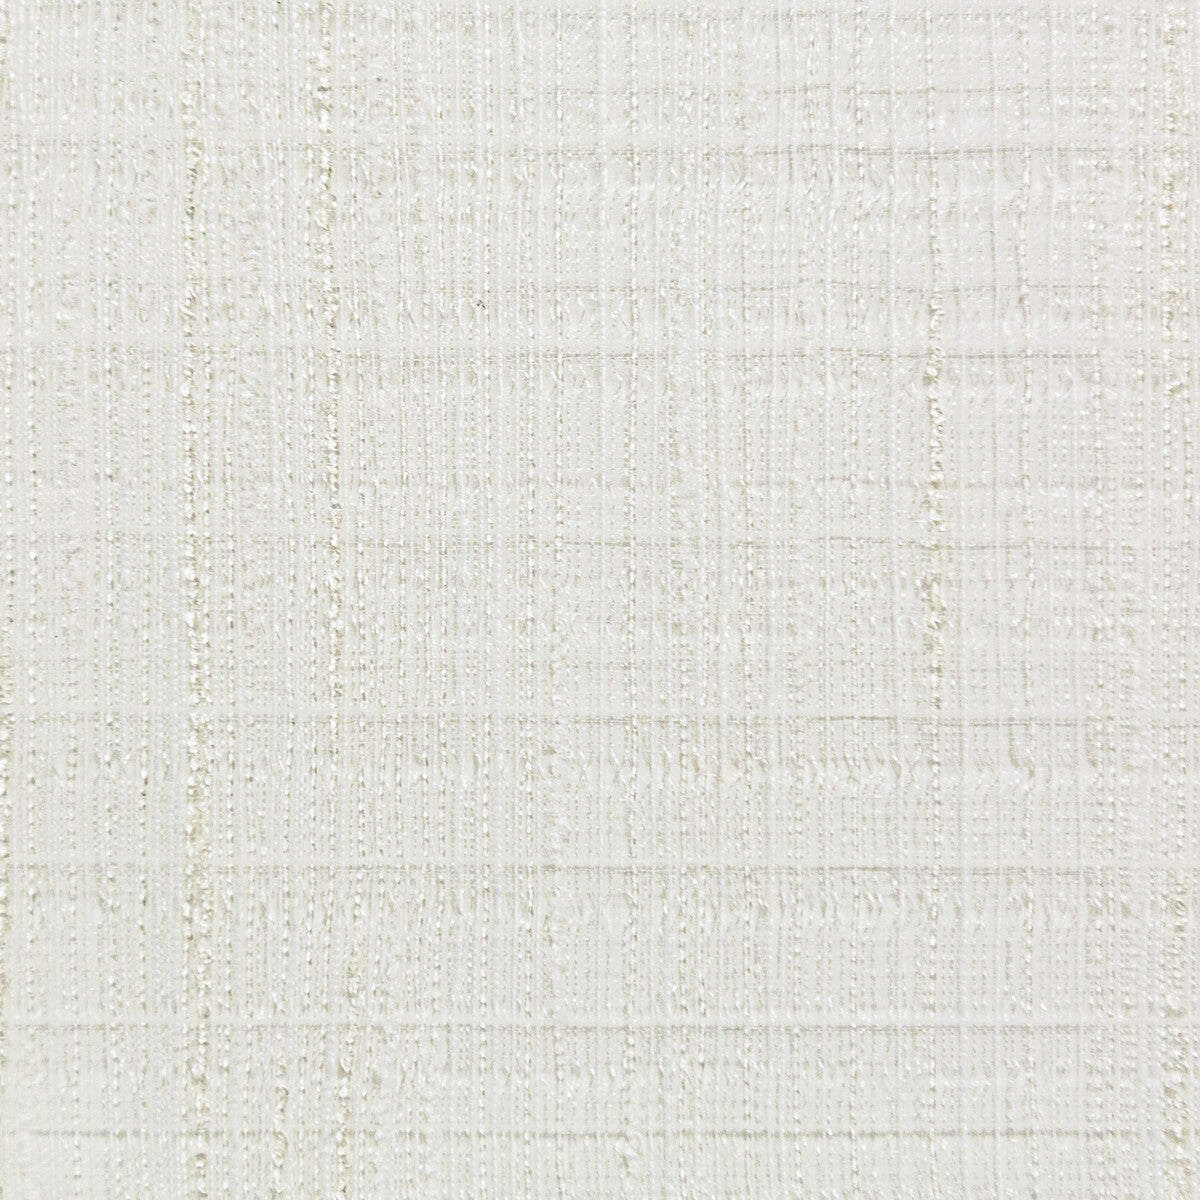 Kravet Basics fabric in 4761-1 color - pattern 4761.1.0 - by Kravet Basics